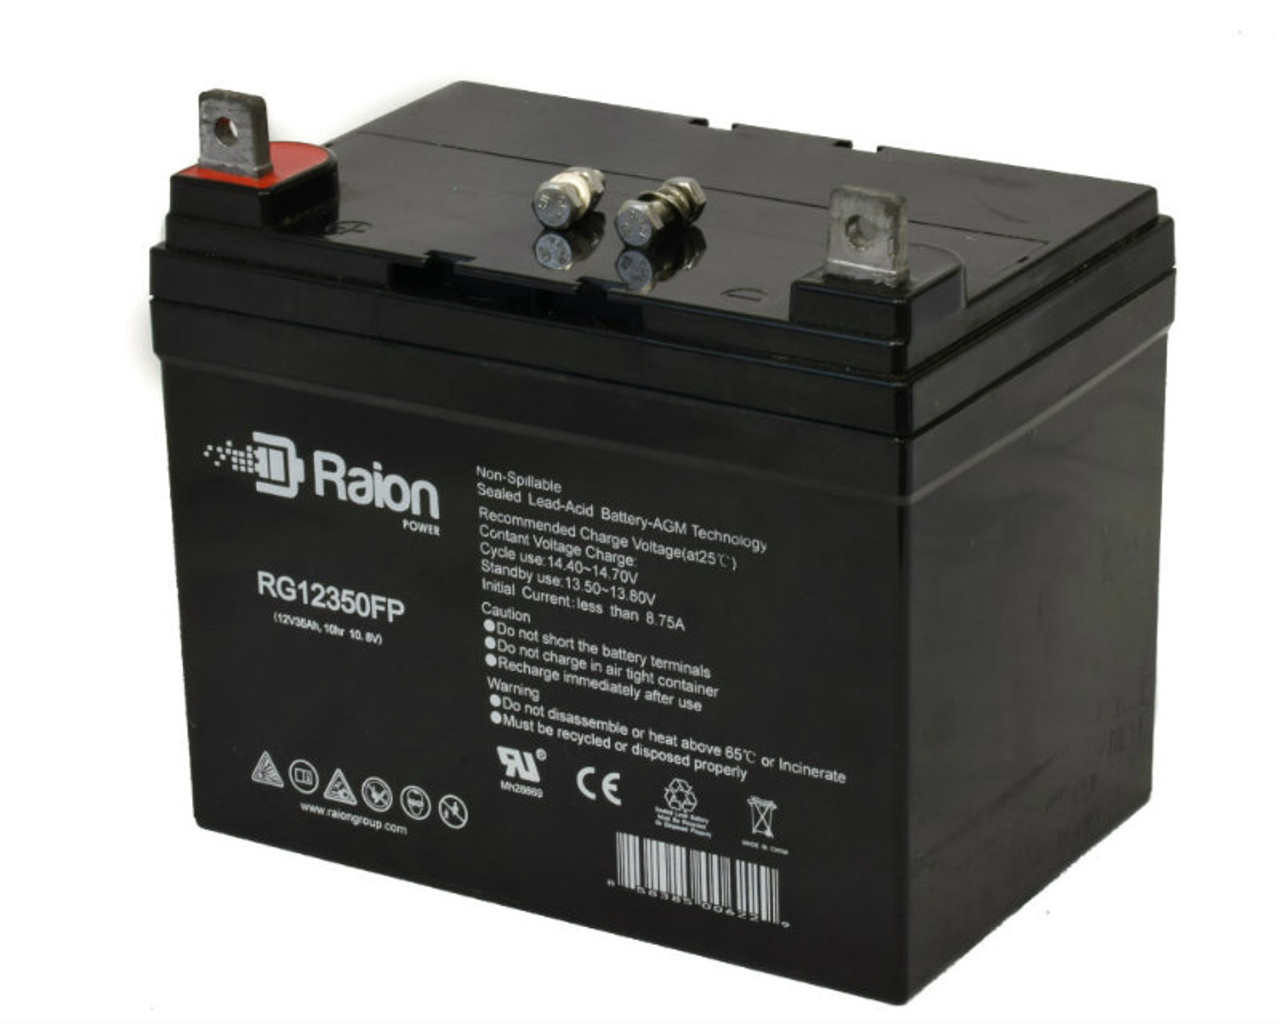 Raion Power Replacement 12V 35Ah RG12350FP Battery for HKBil 6FM33